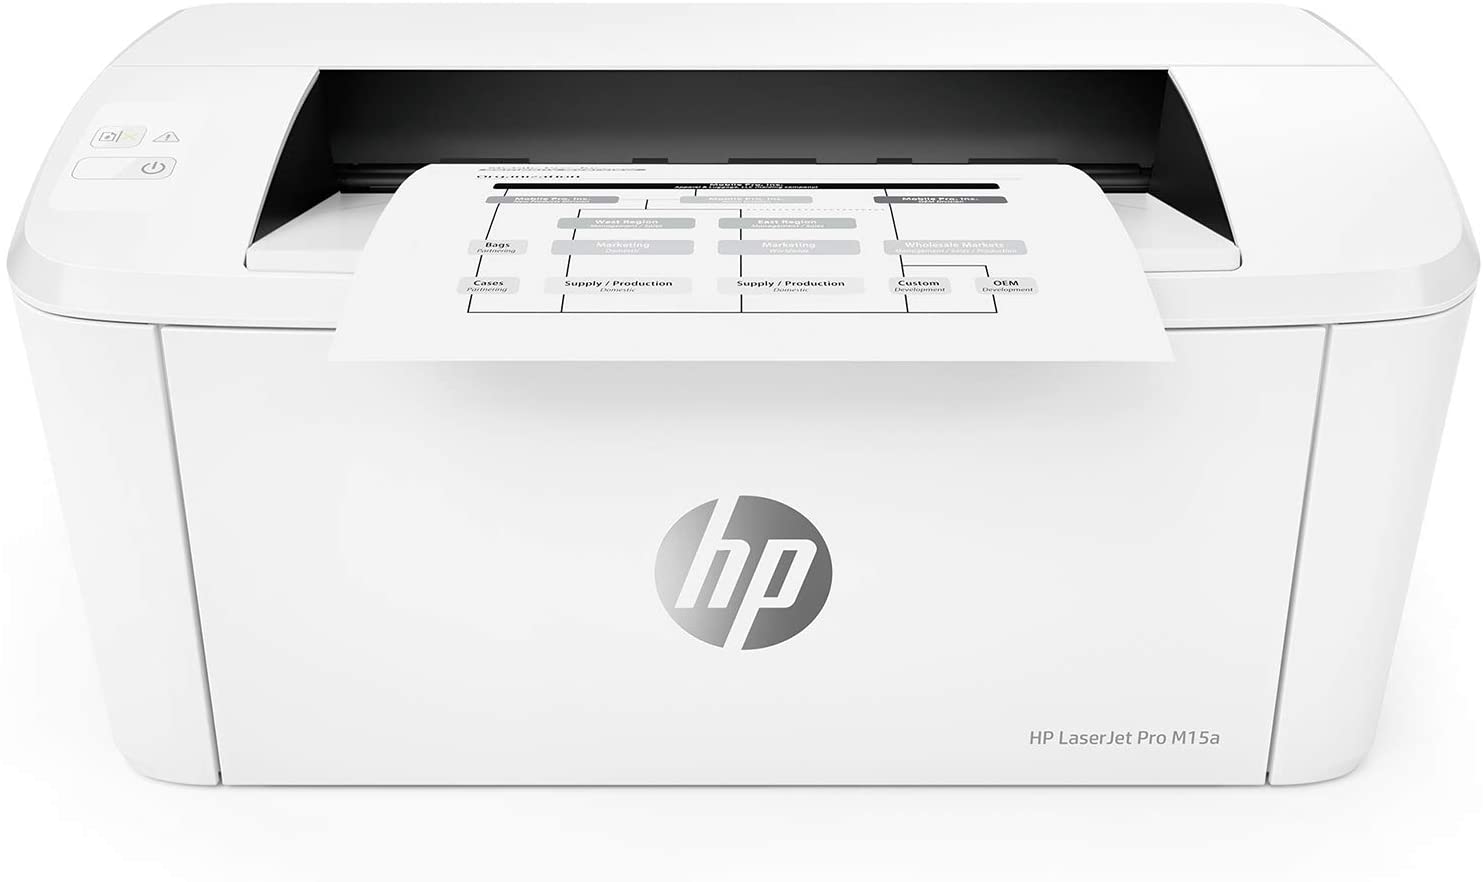 HP LaserJet Pro M15a Printer, White - W2G50A